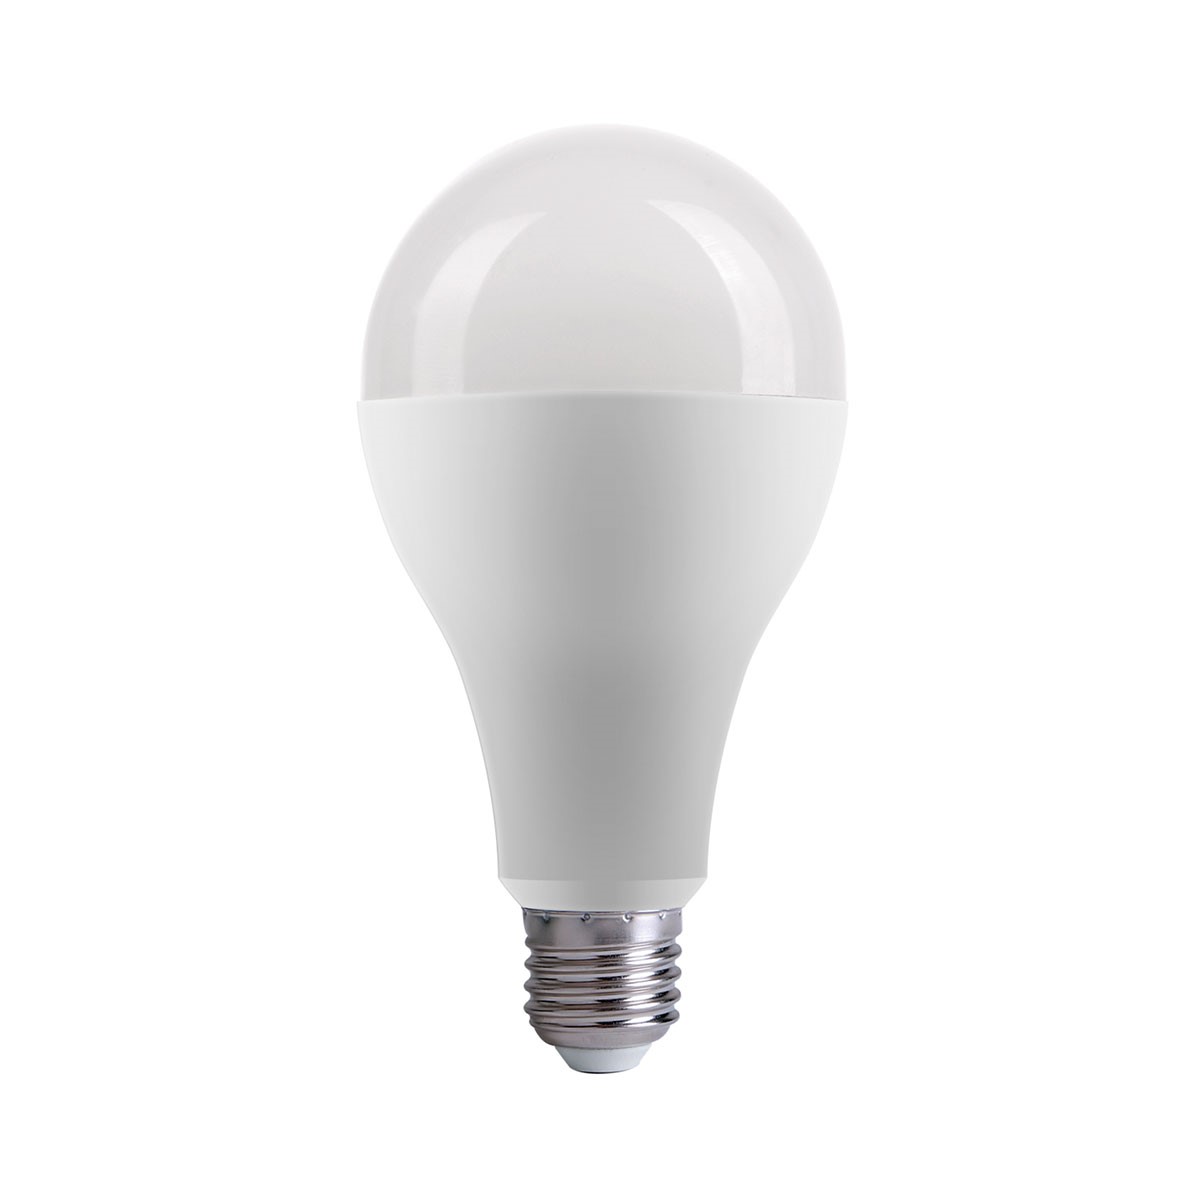 لامپ و چراغ led سیماران، با طول عمر بالا و صرفه جویی در انرژی، برای بودجه شما مفید هستند.